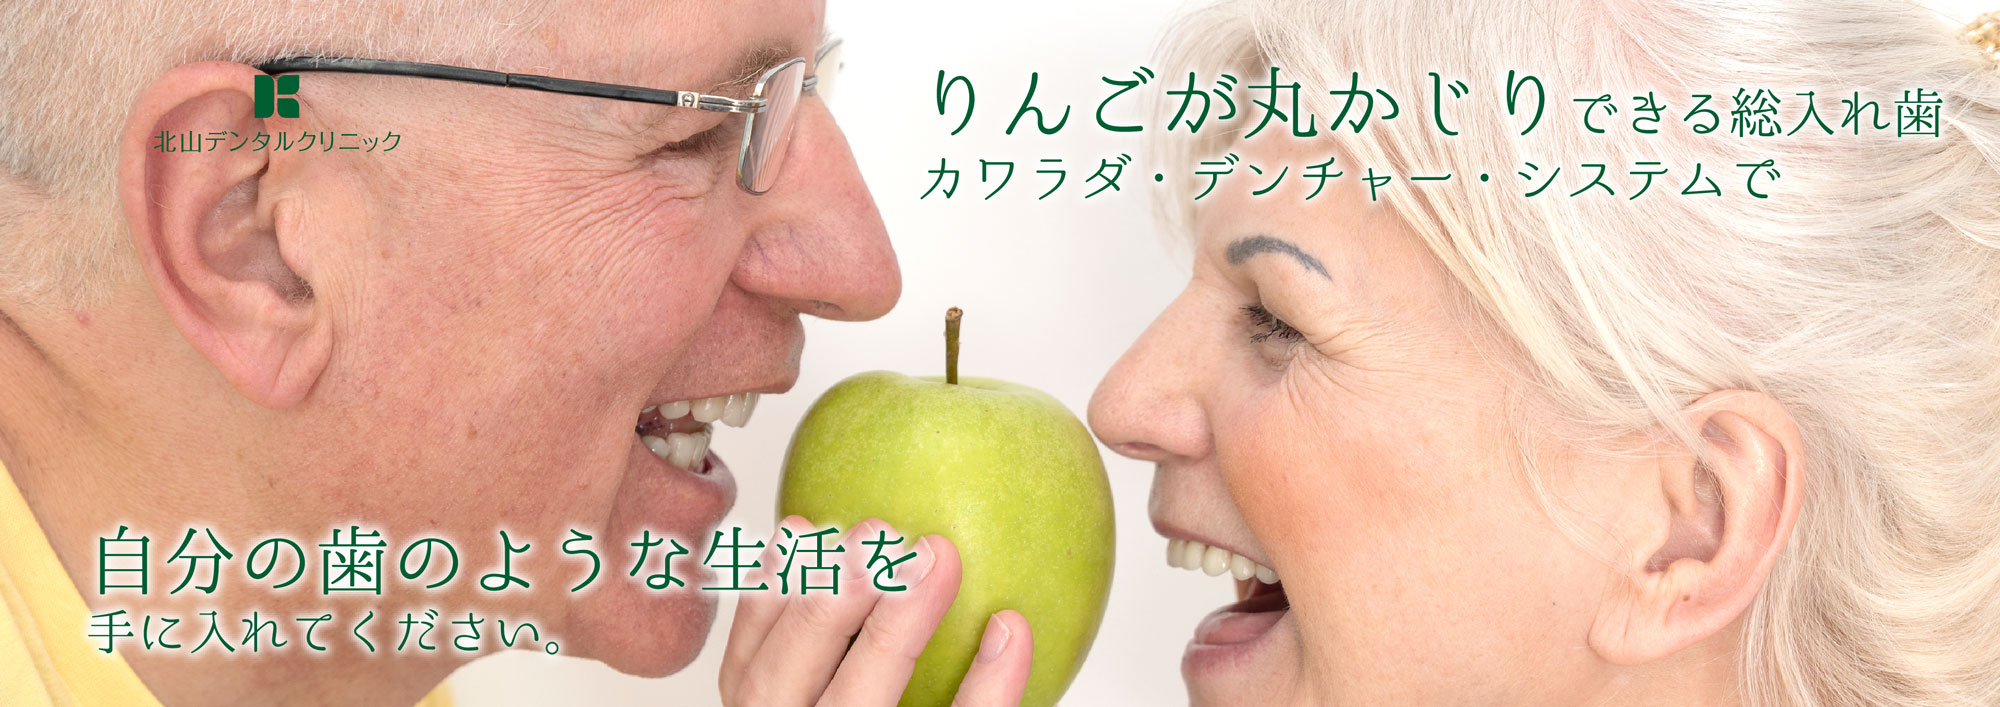 りんごが丸かじりできる総入れ歯カワラダ・デンチャー・システムで自分の歯のような生活を手に入れてください。